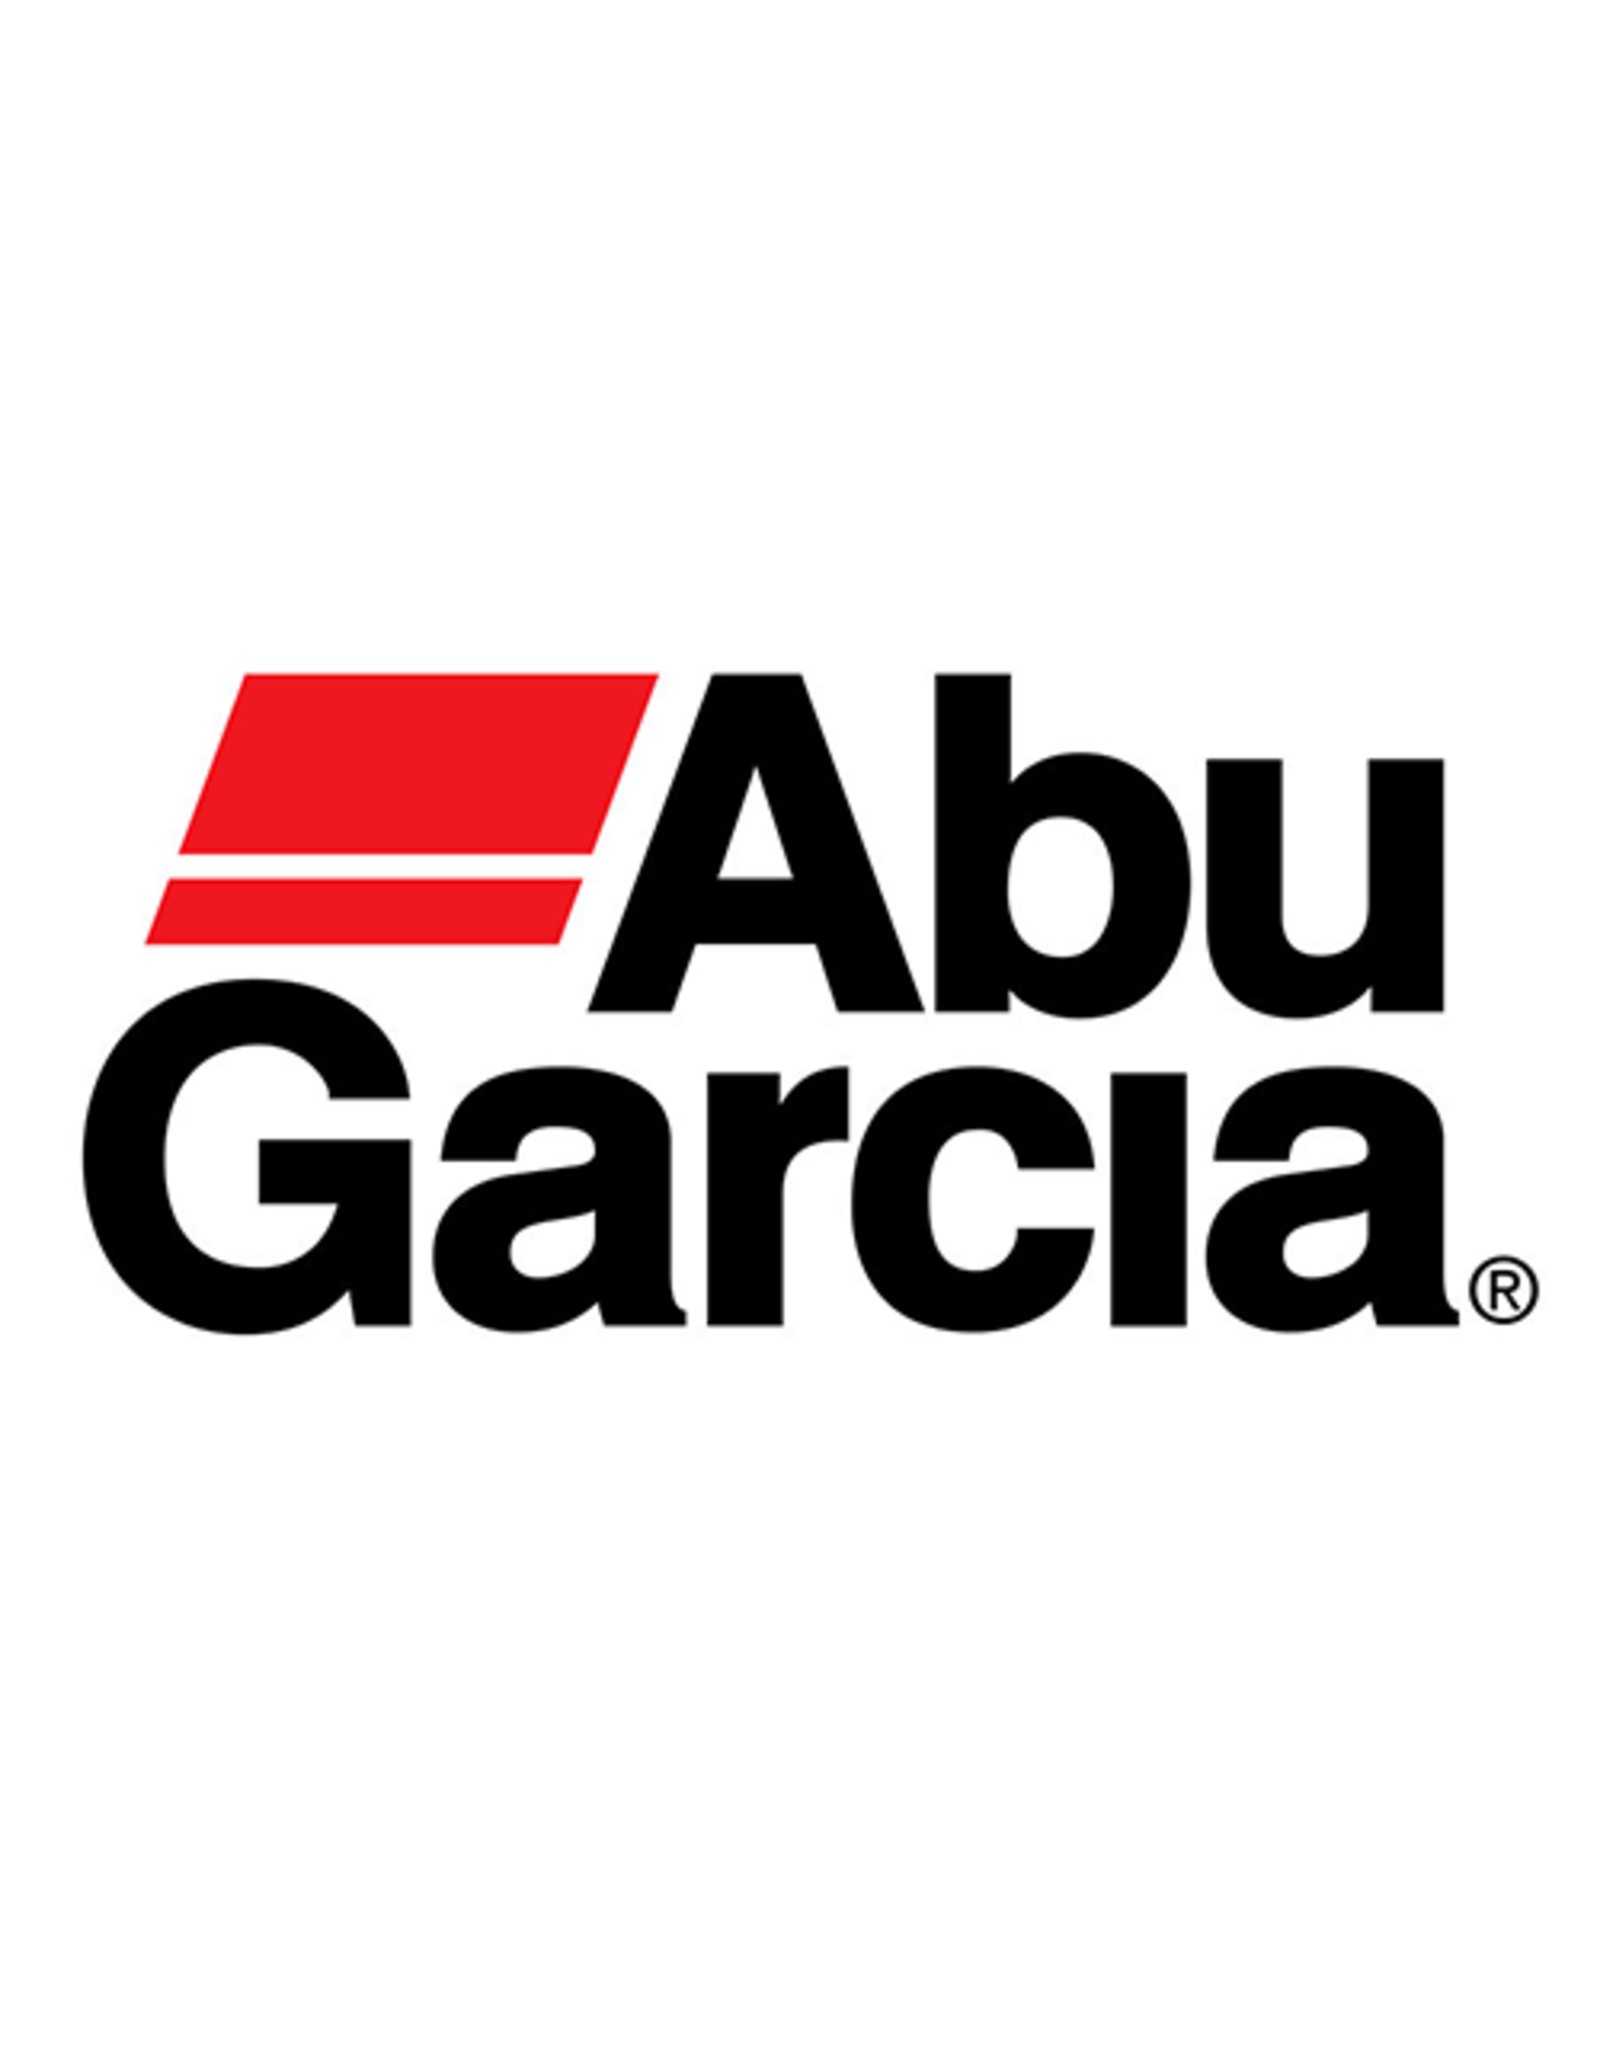 Abu Garcia 33709  DRAG WASHER